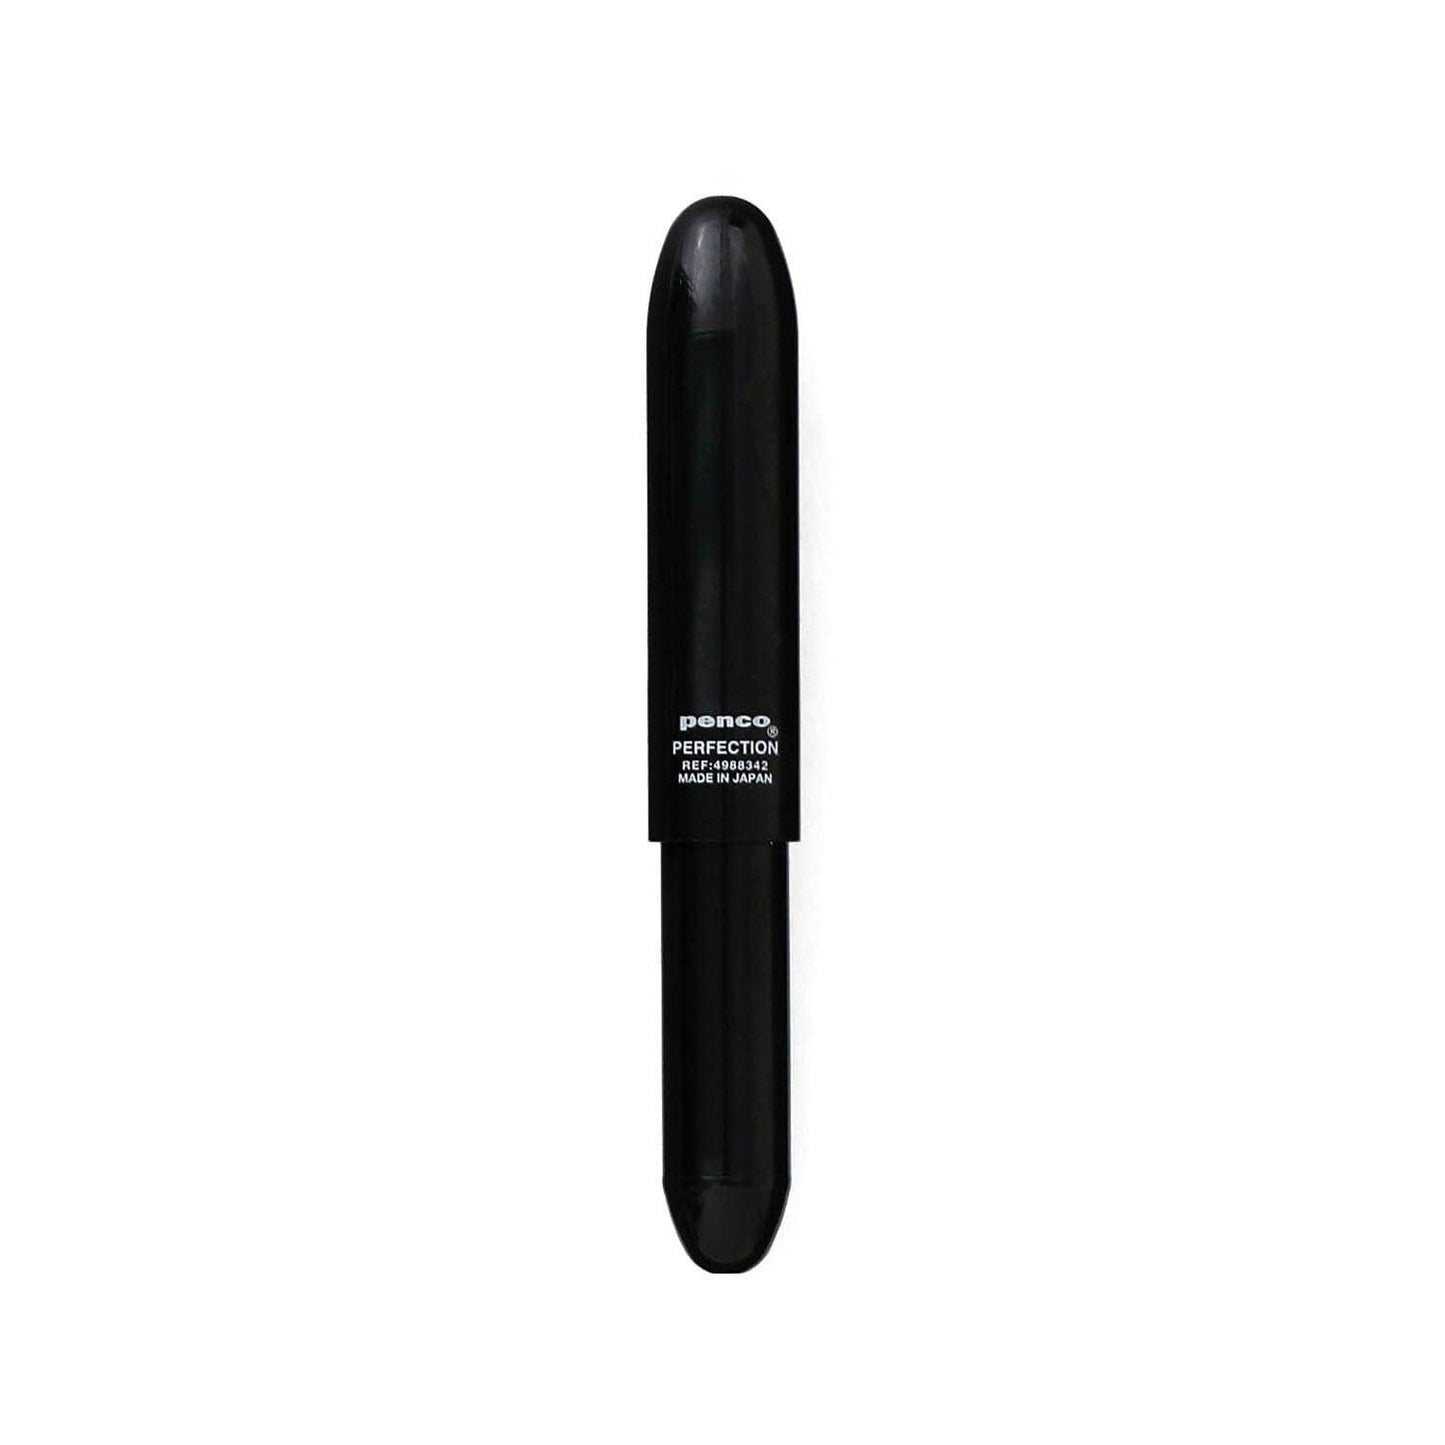 Hightide Penco Bullet Ballpoint Pen Light: Black